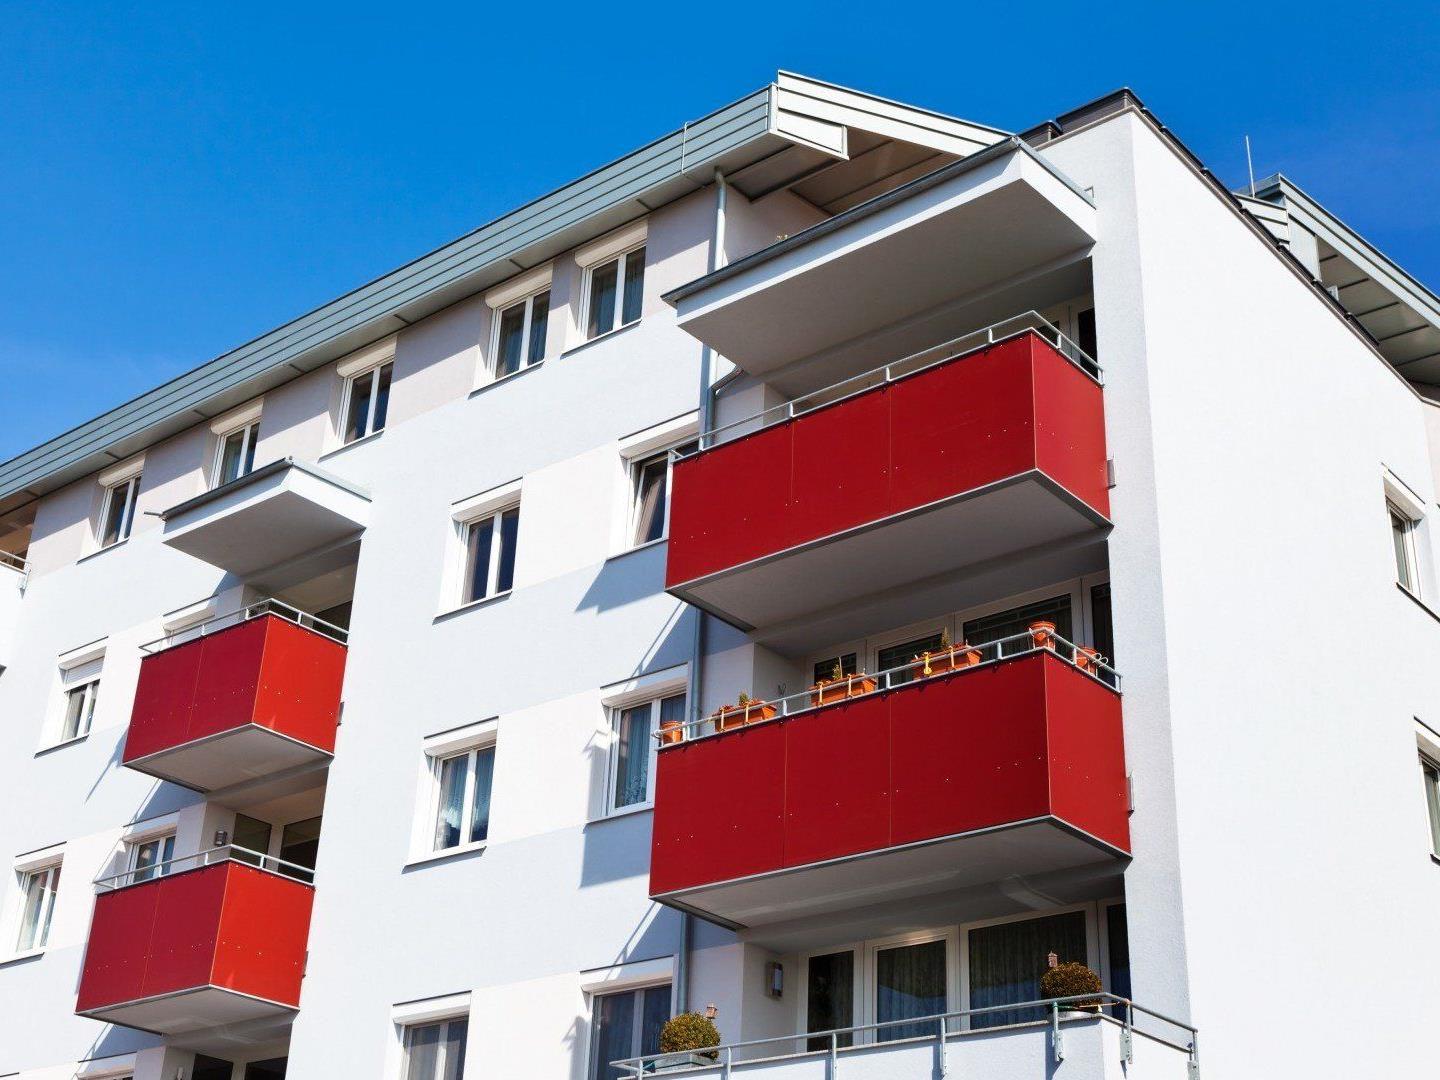 211 Millionen Euro fließen heuer in die Sanierung von Wohnungen in Wien.